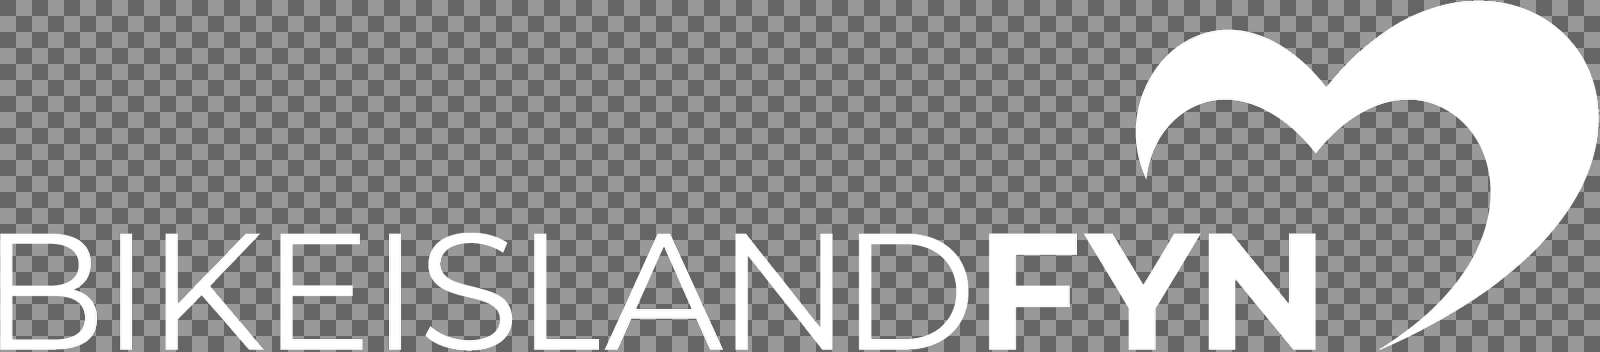 BikeislandFyn logo hvidhvid rgb